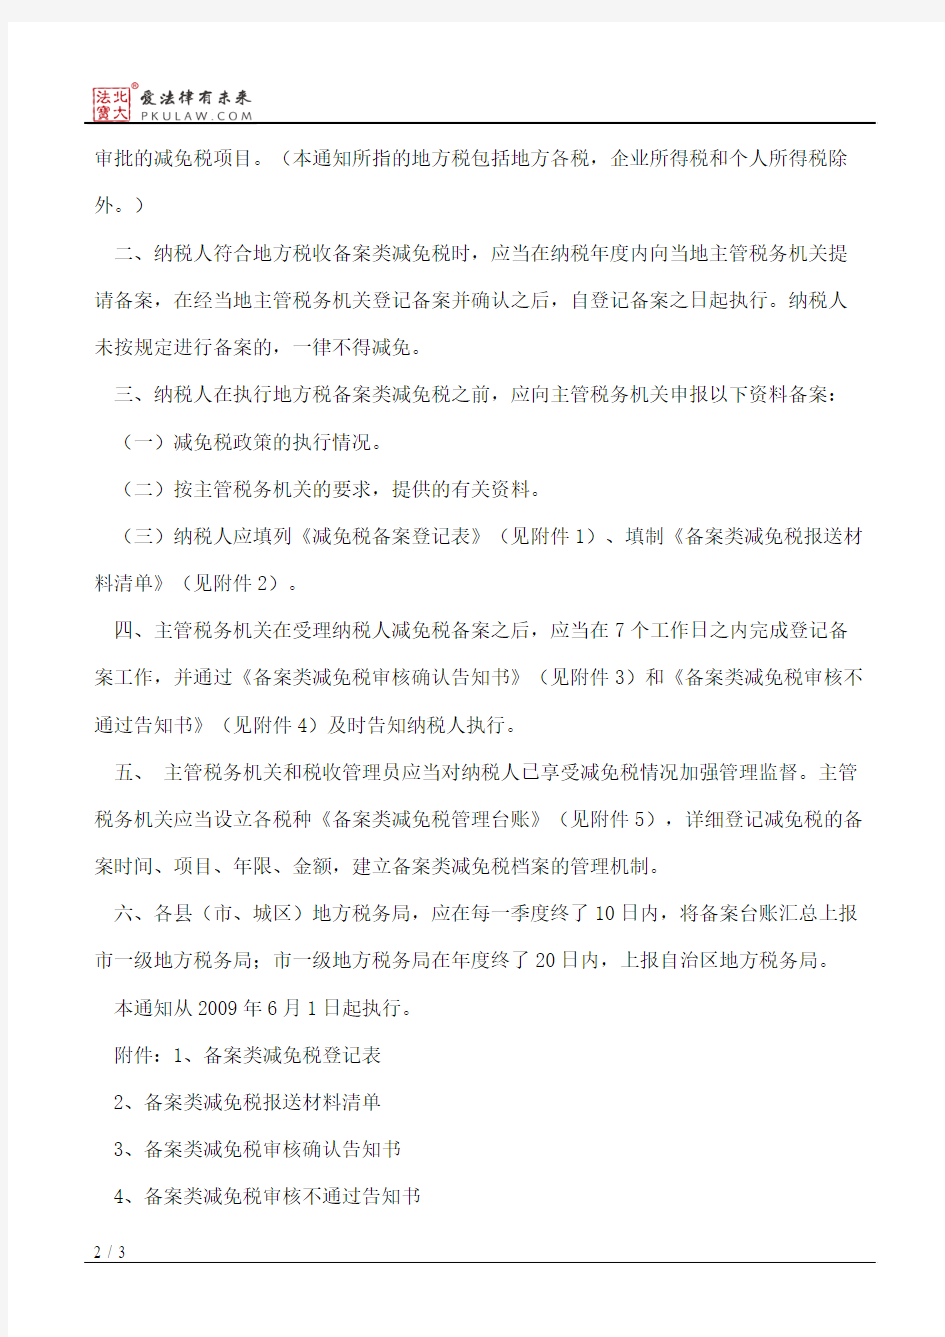 广西壮族自治区地方税务局关于加强地方税备案类减免税管理的通知